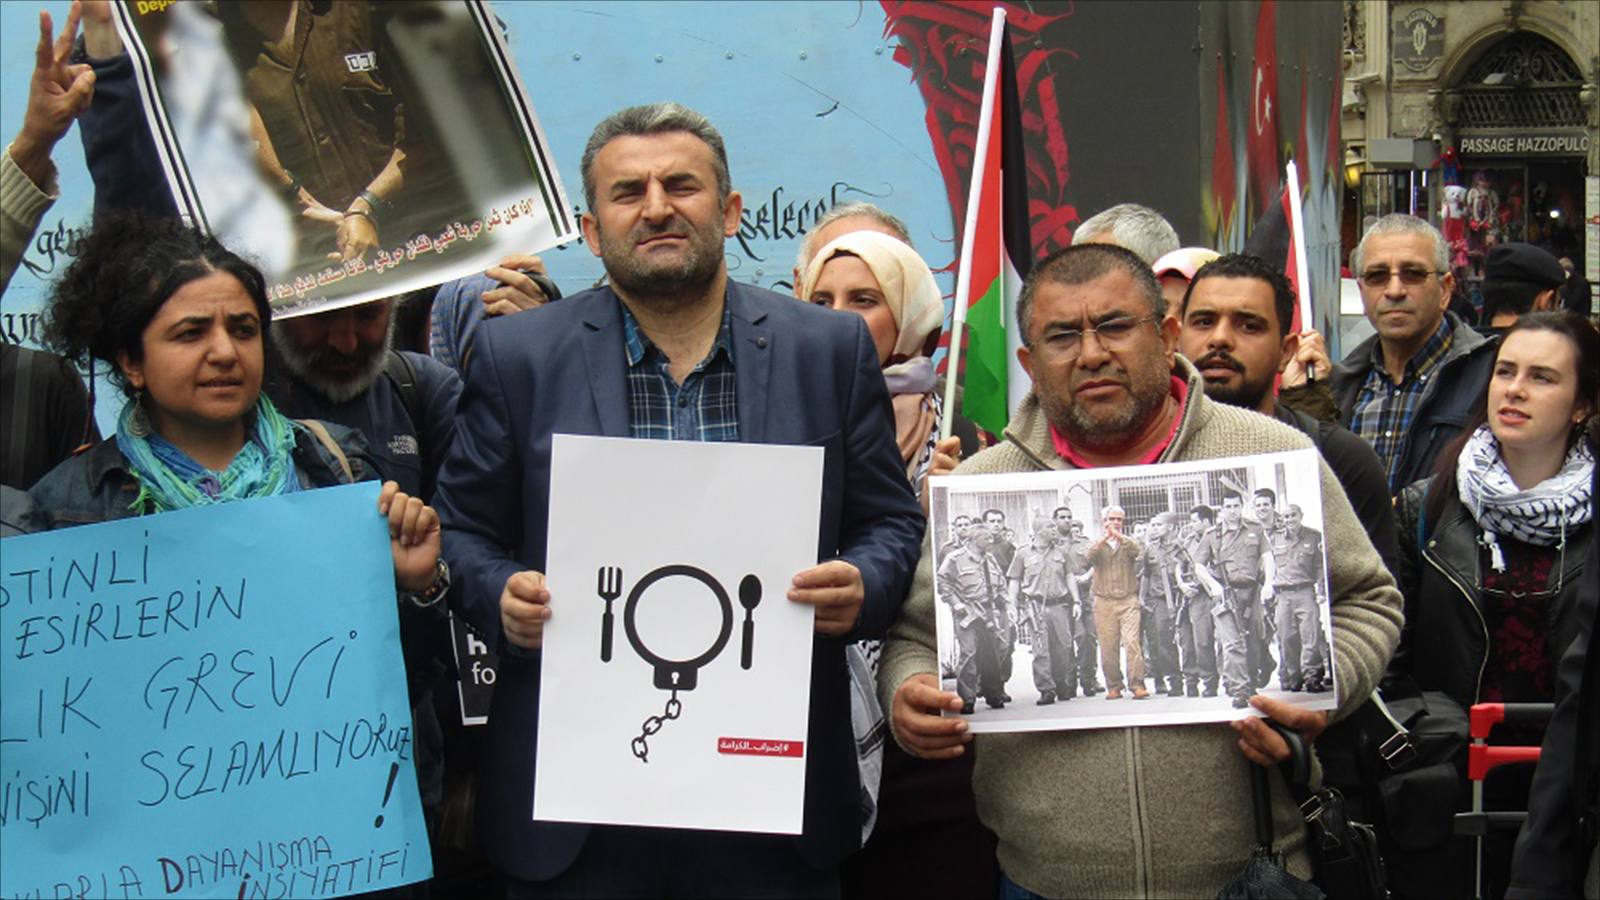 ‪نشطاء بحركة المقاطعة الدولية يرفعون صور قادة الأسرى المضربين عن الطعام في وقفة بإسطنبول‬ نشطاء بحركة المقاطعة الدولية يرفعون صور قادة الأسرى المضربين عن الطعام في وقفة بإسطنبول (الجزيرة)